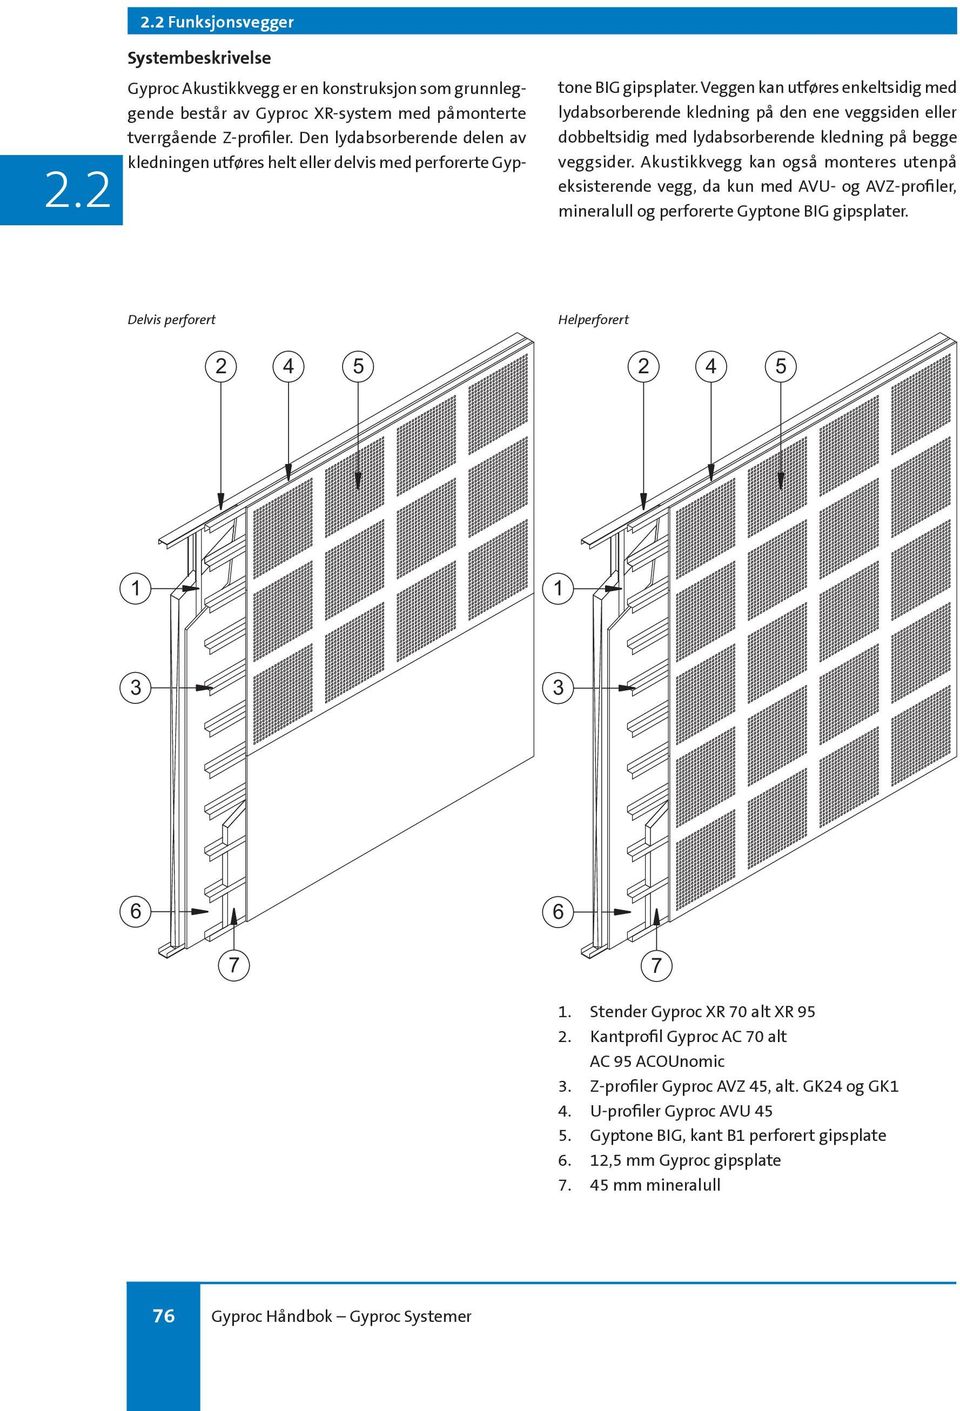 Veggen kan utføres enkeltsidig med lydabsorberende kledning på den ene veggsiden eller dobbeltsidig med lydabsorberende kledning på begge veggsider.